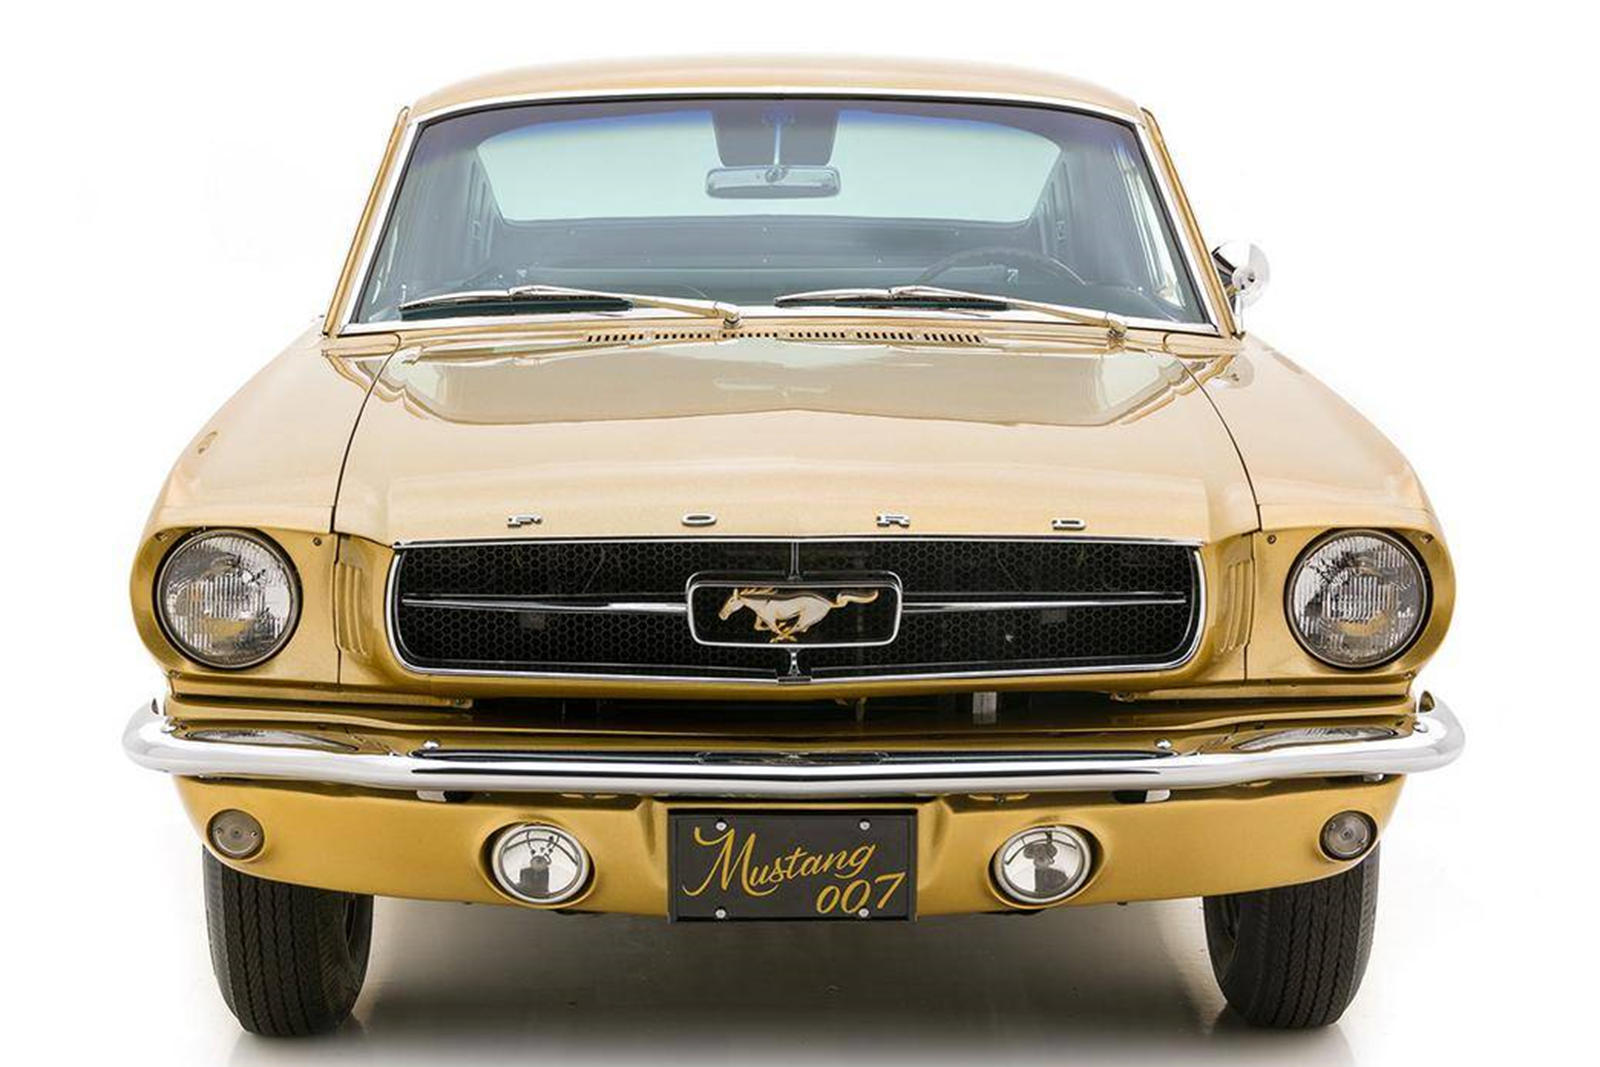 К счастью, Ford не отказался от проекта. После завершения золотой Mustang Fastback демонстрировался на рекламных мероприятиях, связанных с кино, а затем был продан сотруднику Ford из Плимута, штат Мичиган. Его подарили его сыну, который участвовал в 